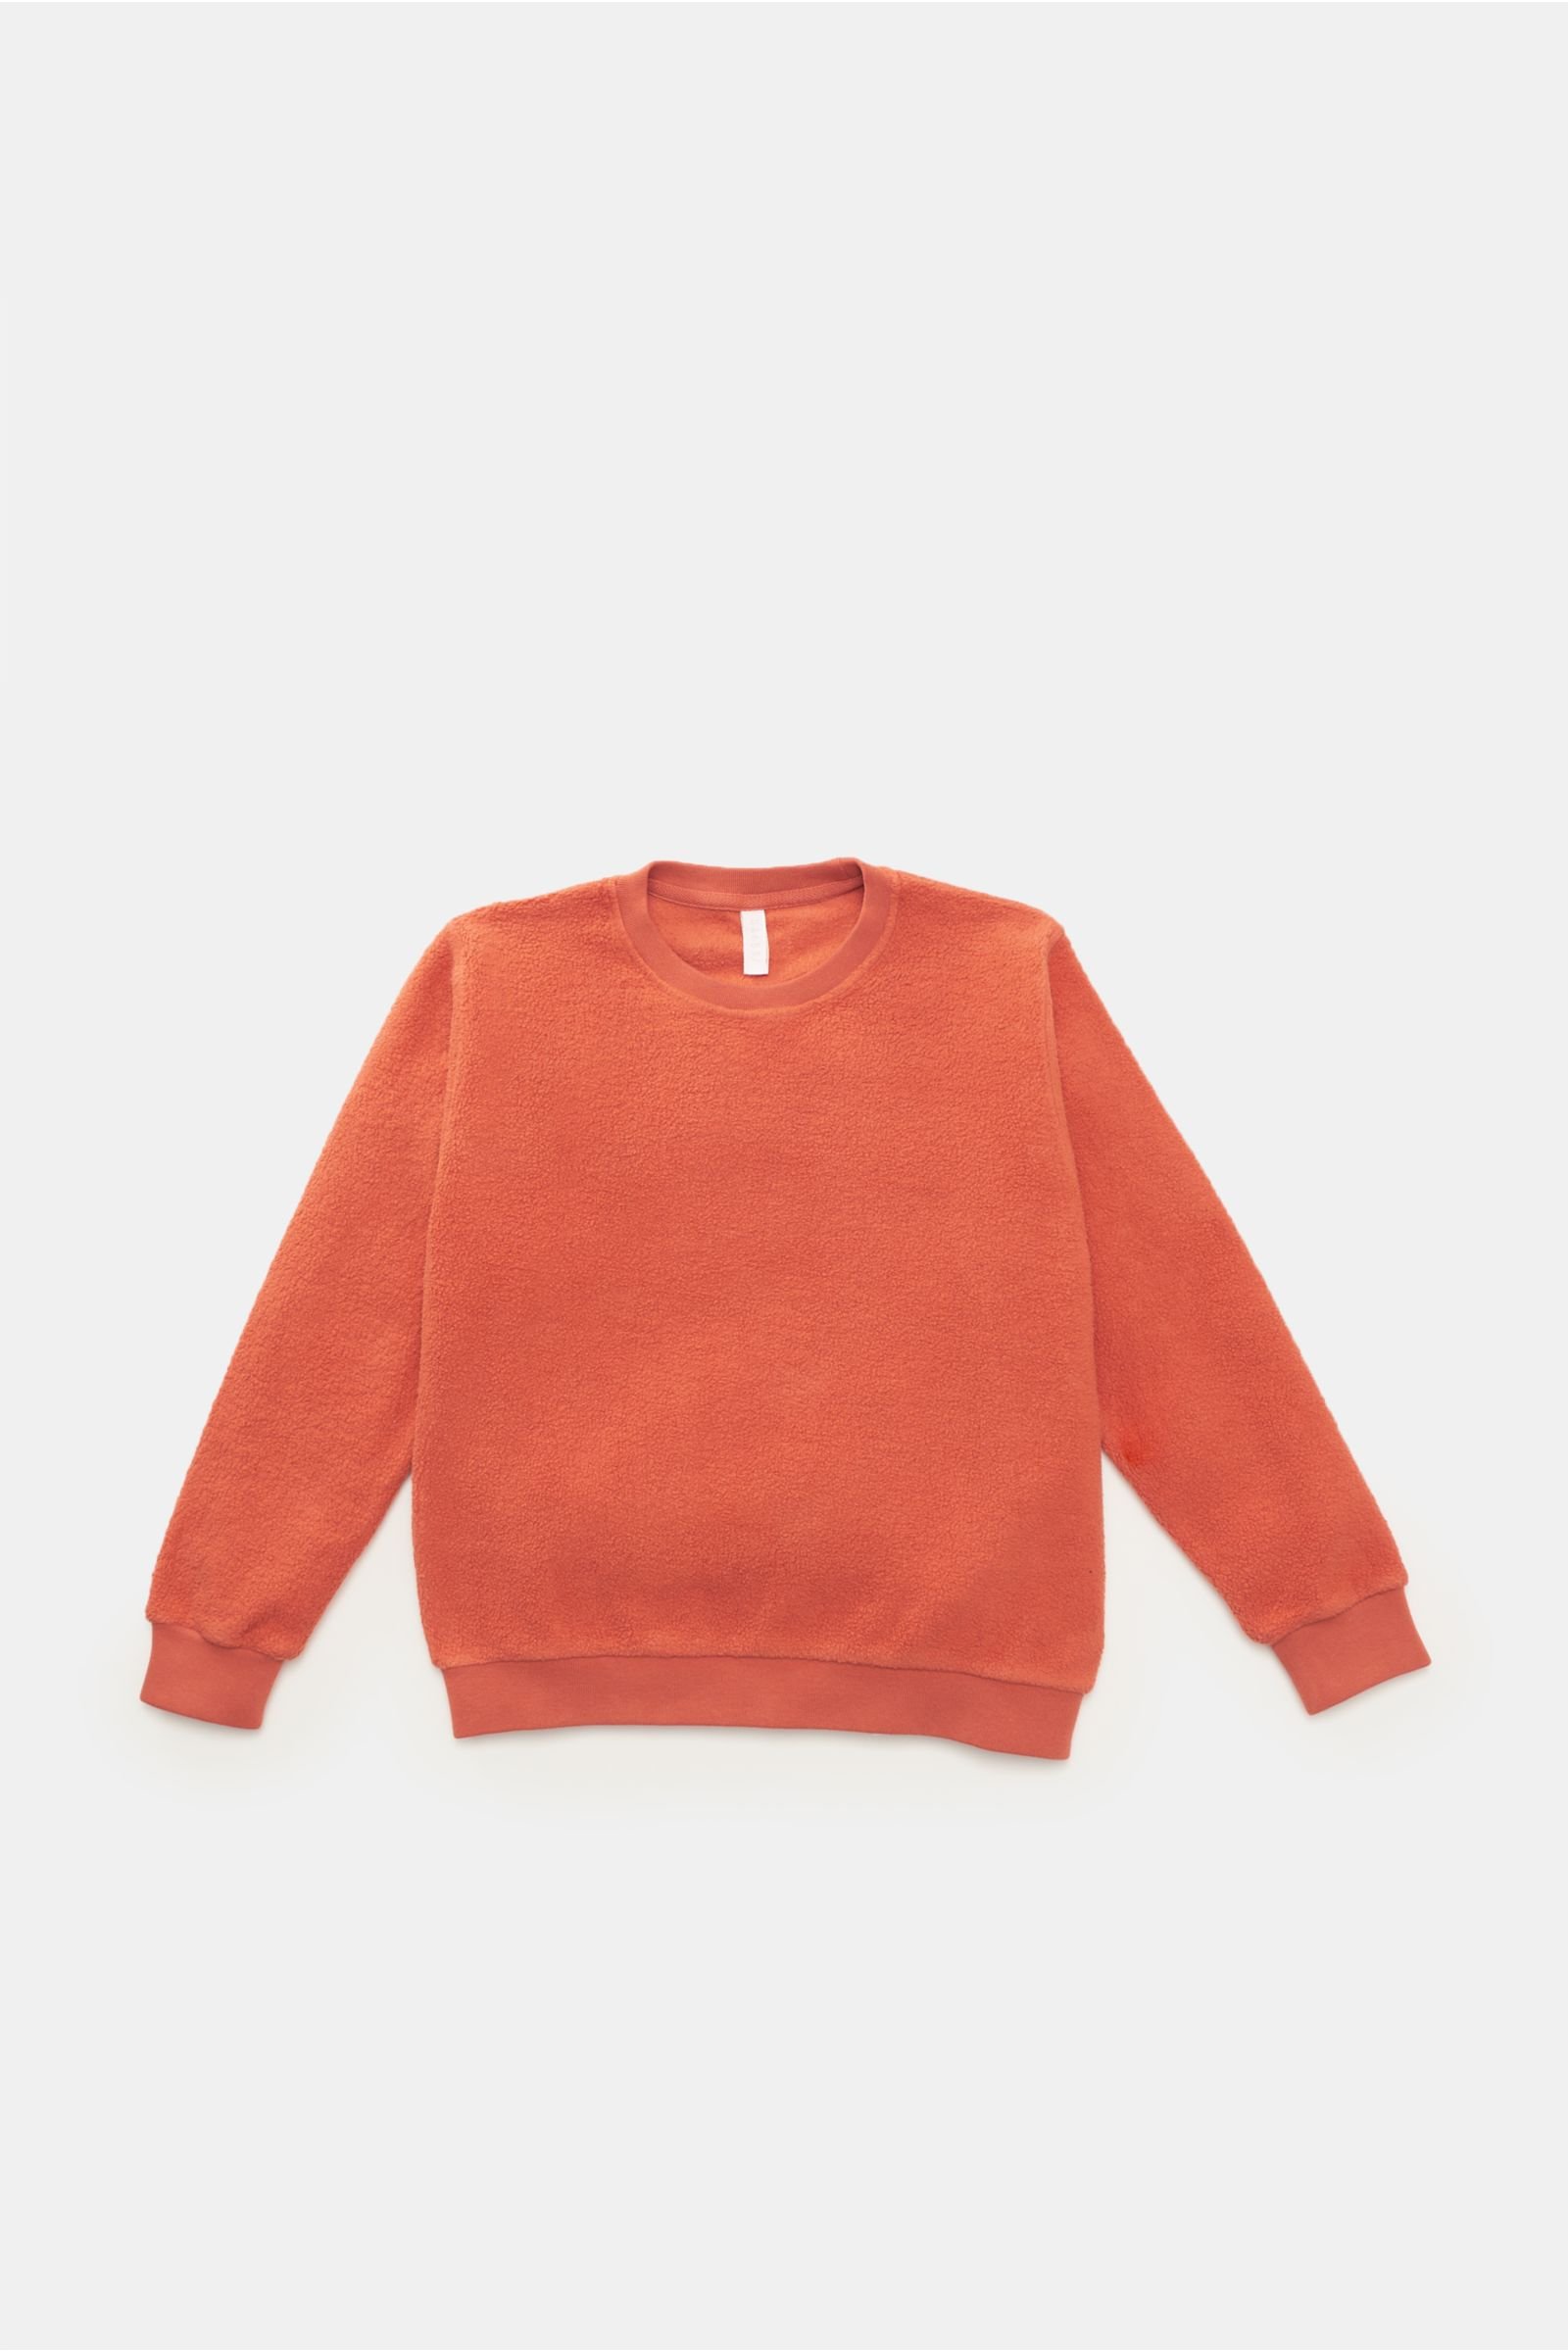 Kids fleece crew neck sweatshirt 'Oyster Kids PF Crew' orange